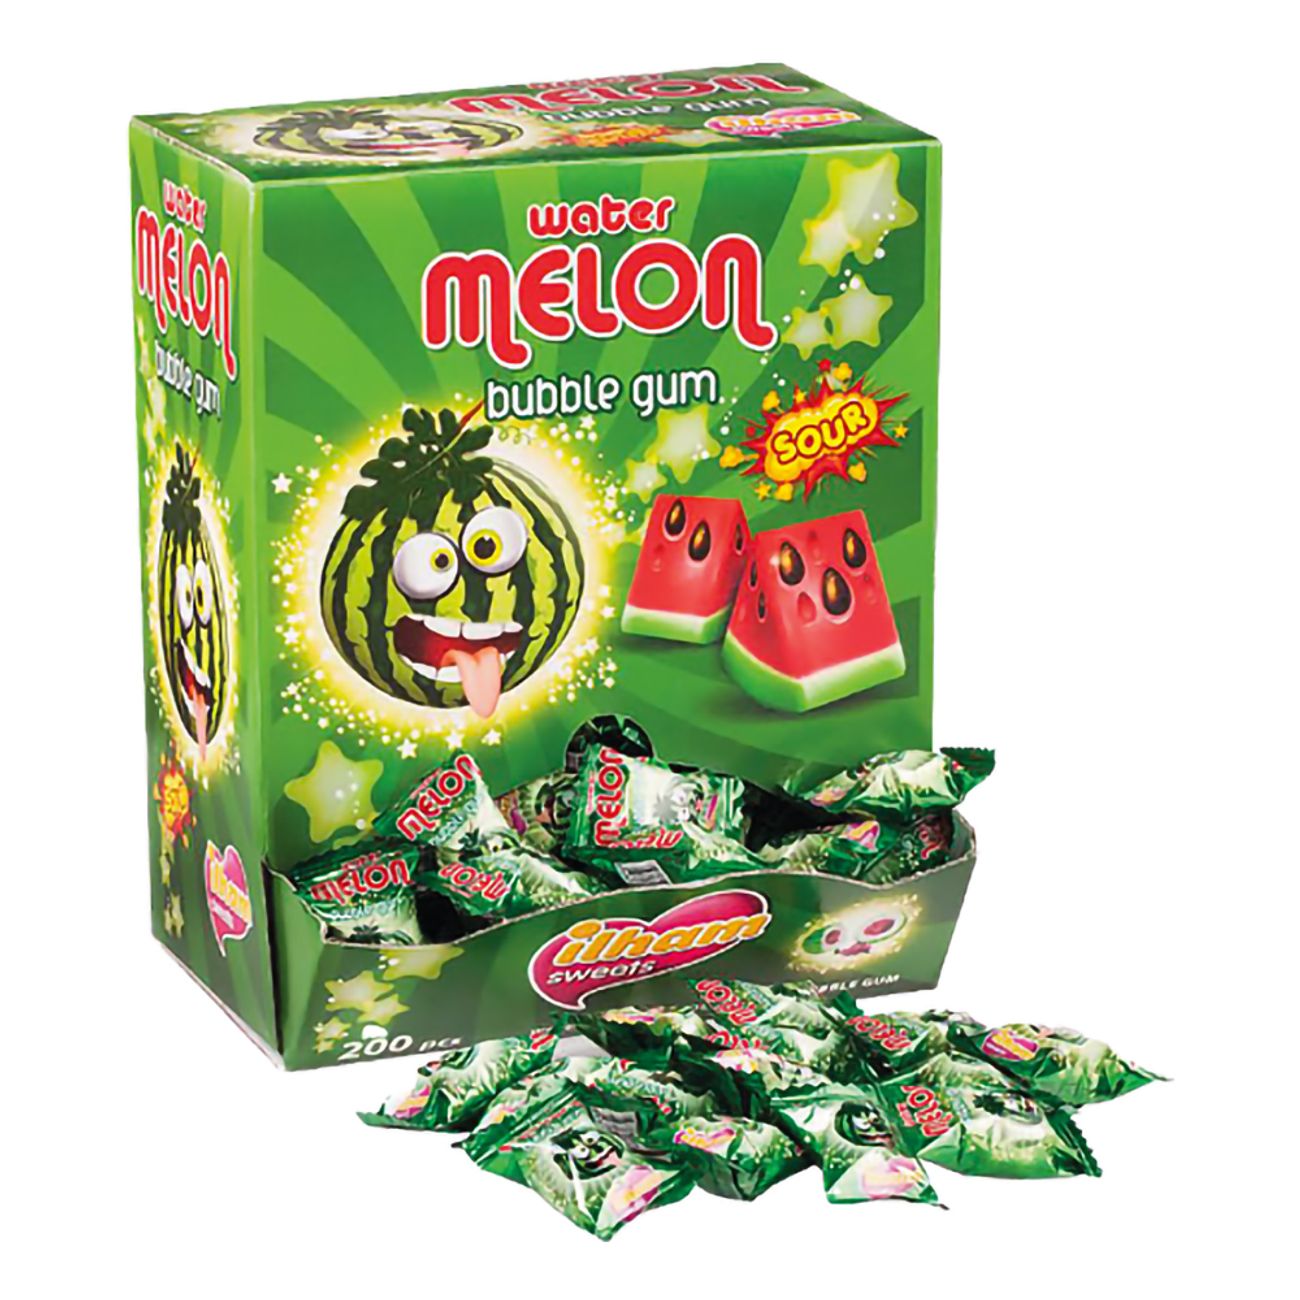 watermelon-bubble-gum-automat-101814-1